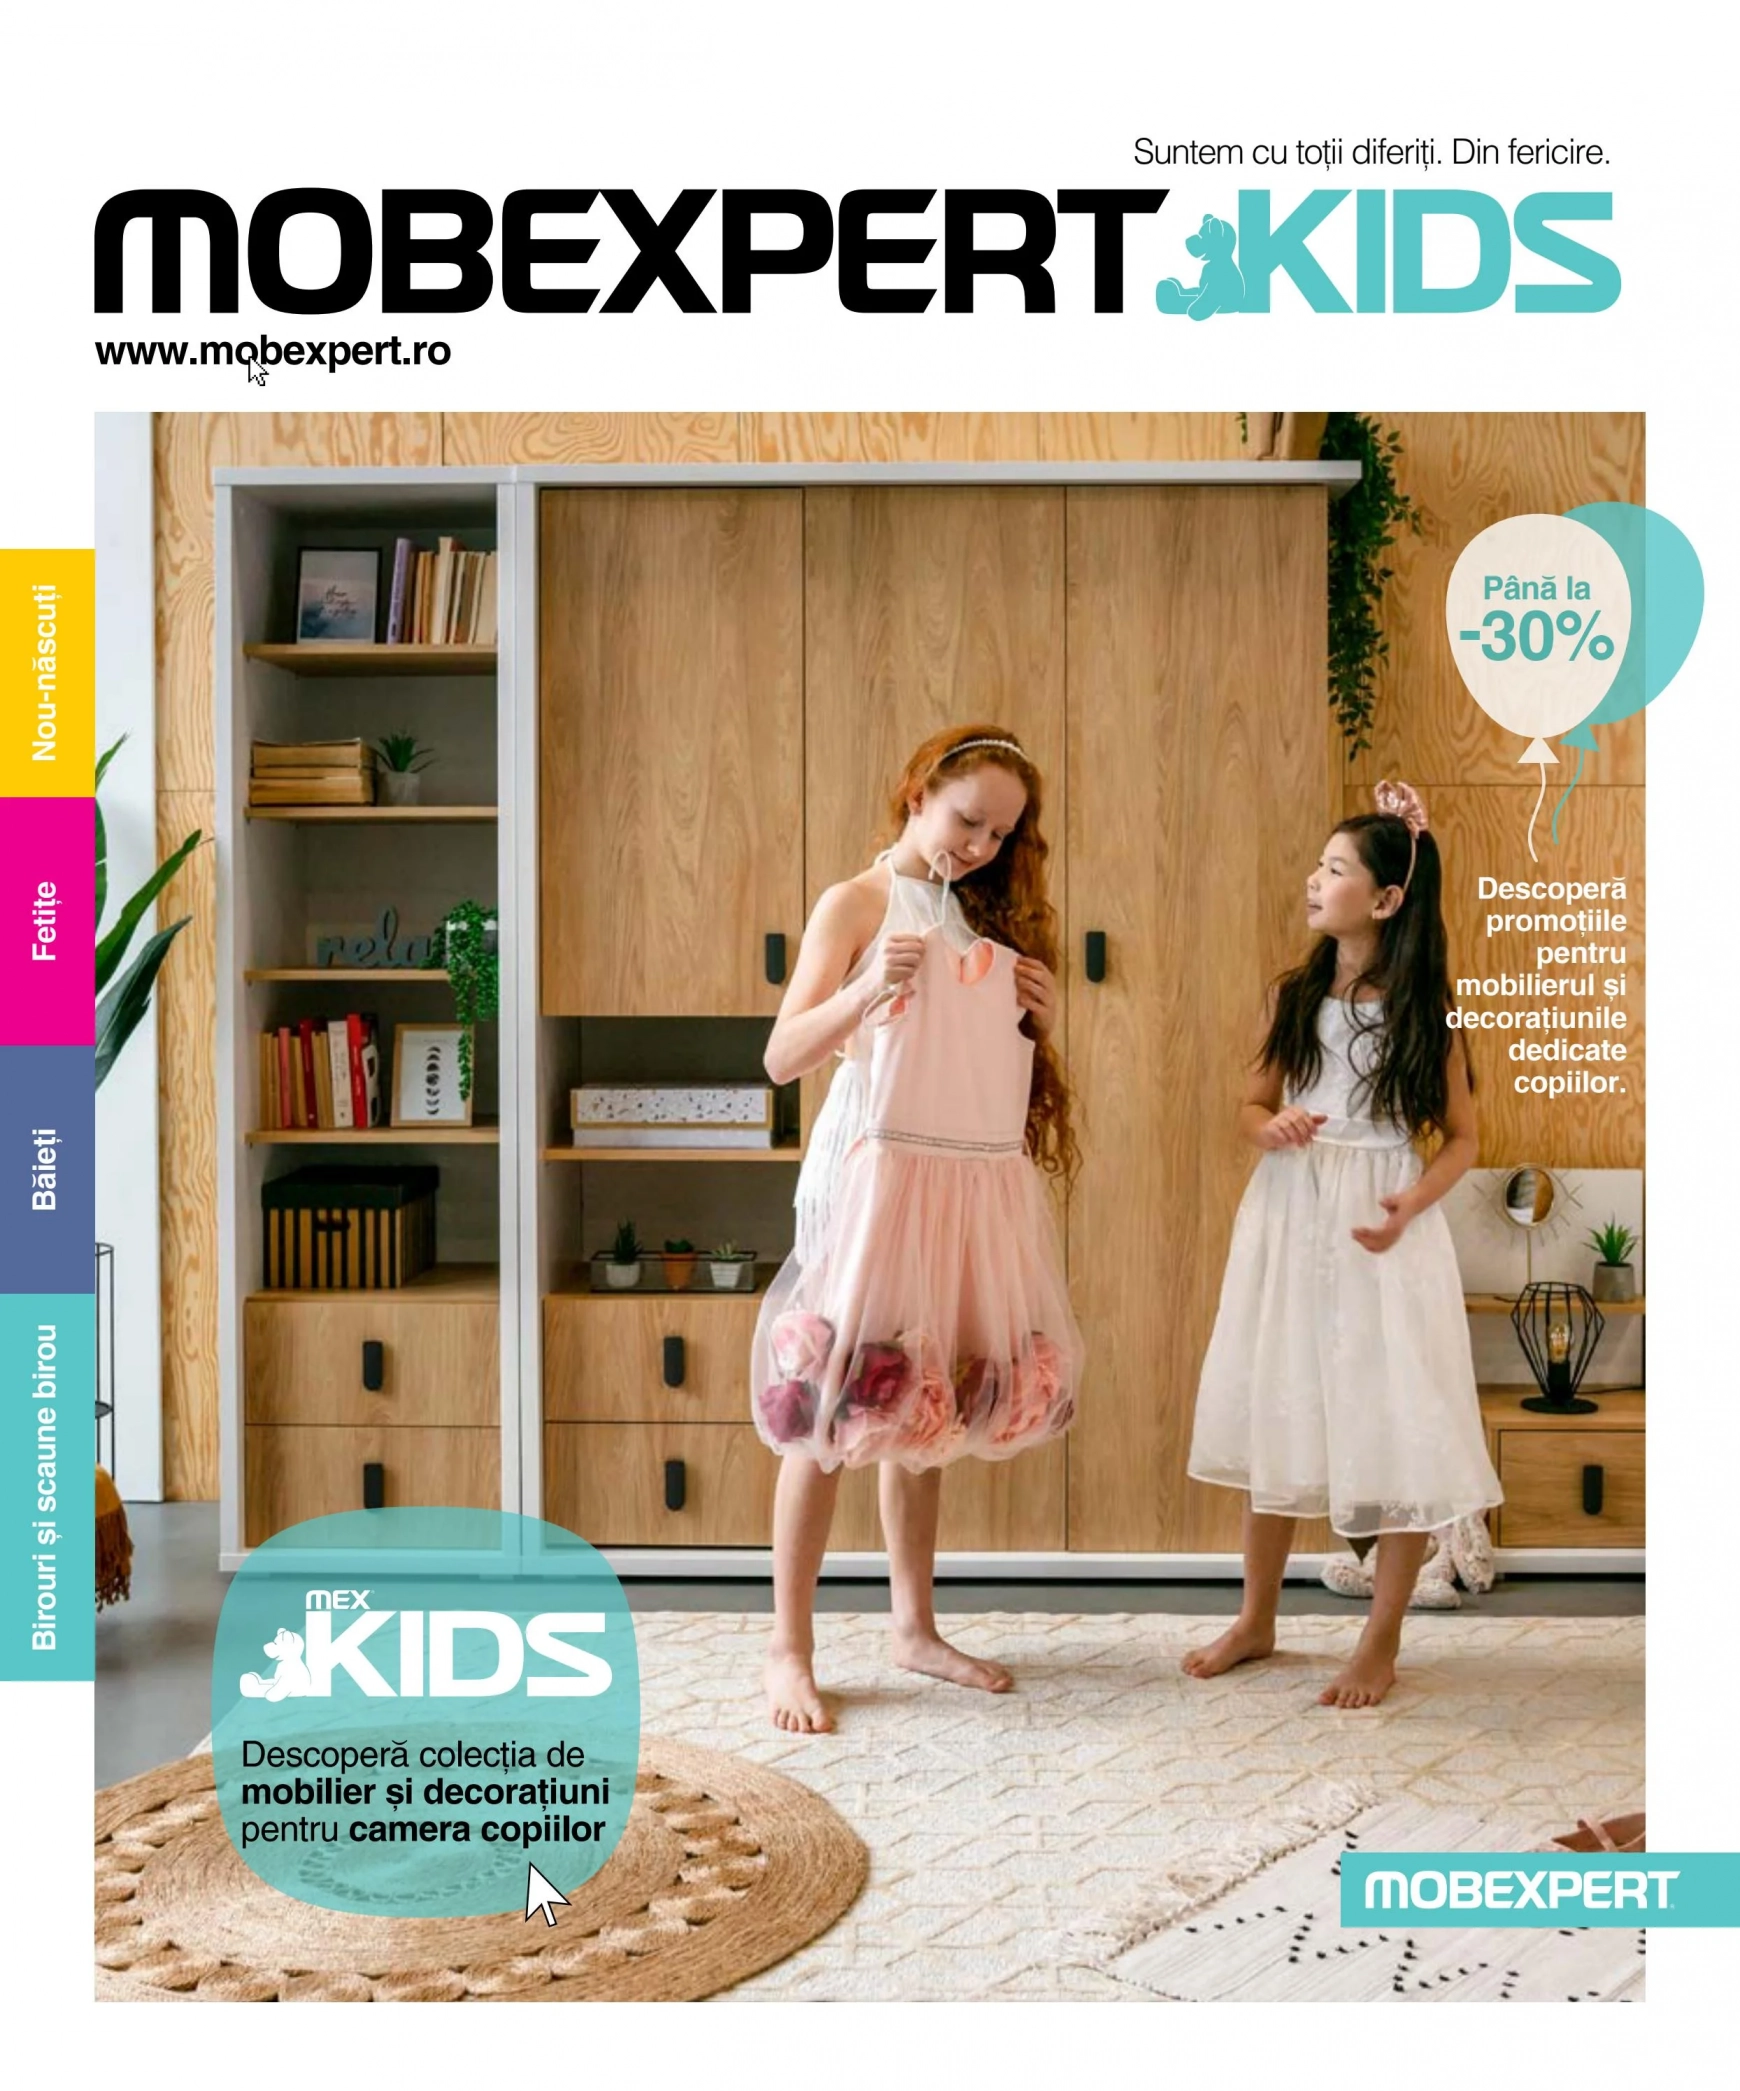 mobexpert - Mobexpert Kids - Noua colecție de mobilier și decorațiuni pentru Camera copiilor